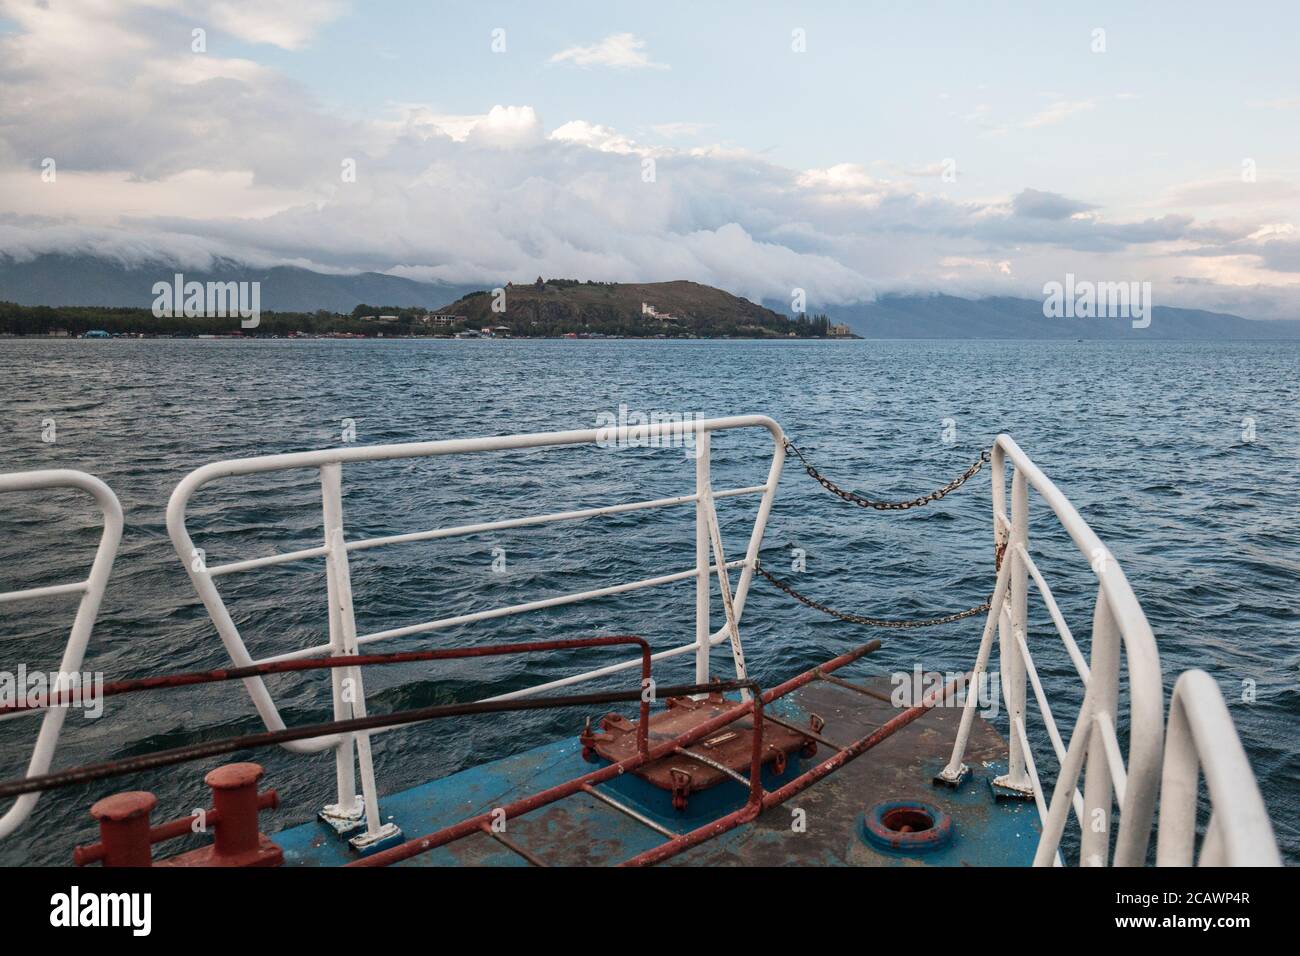 Sevan lake, Armenia Stock Photo